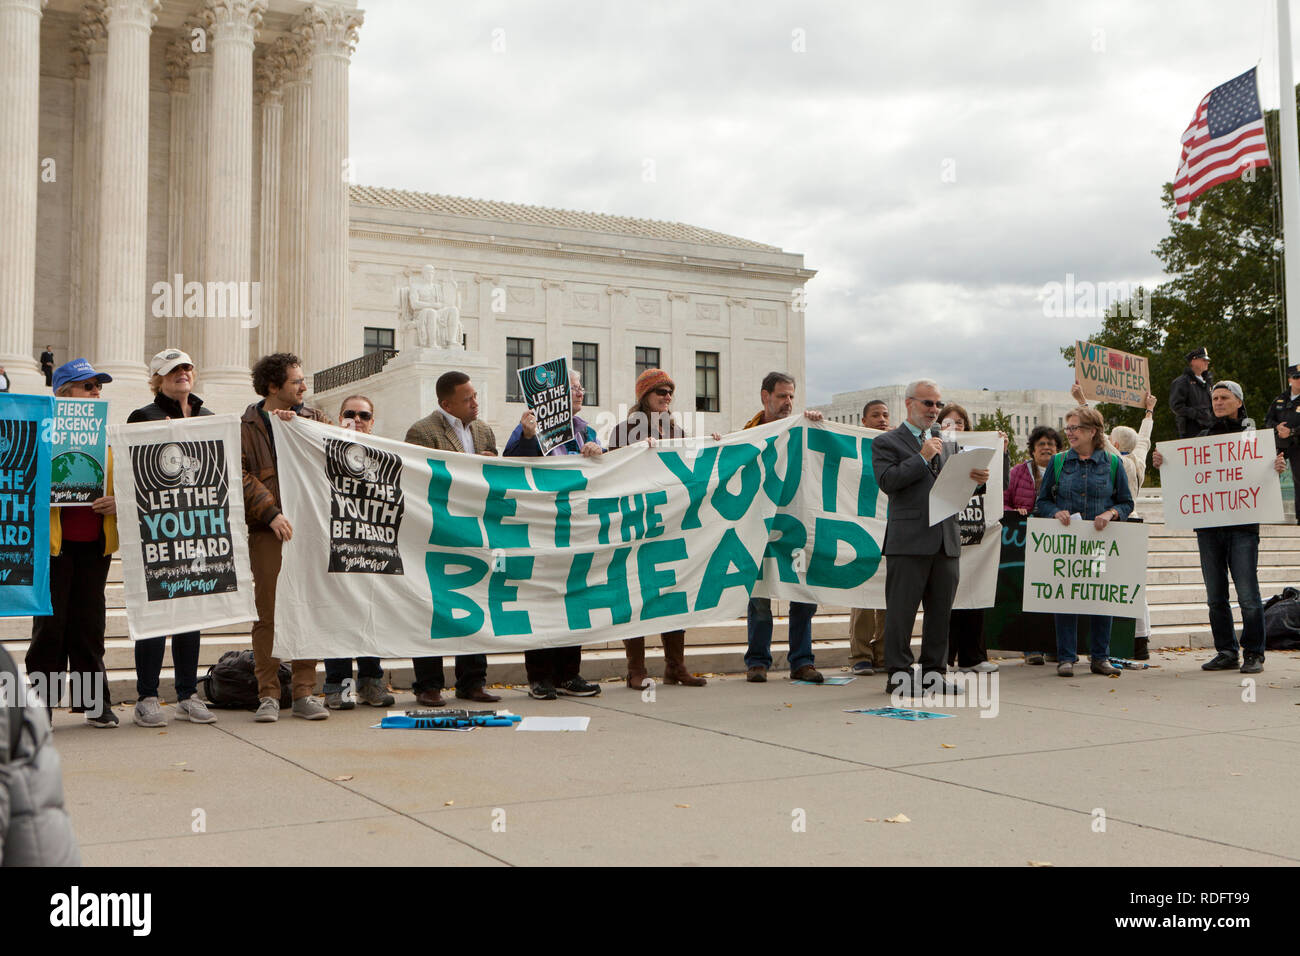 Settembre 10th, 2018, Washington DC: manifestanti rally di fronte alla Corte suprema degli Stati Uniti edificio nel supporto di 'lasciare la gioventù essere ascoltato' circolazione Foto Stock